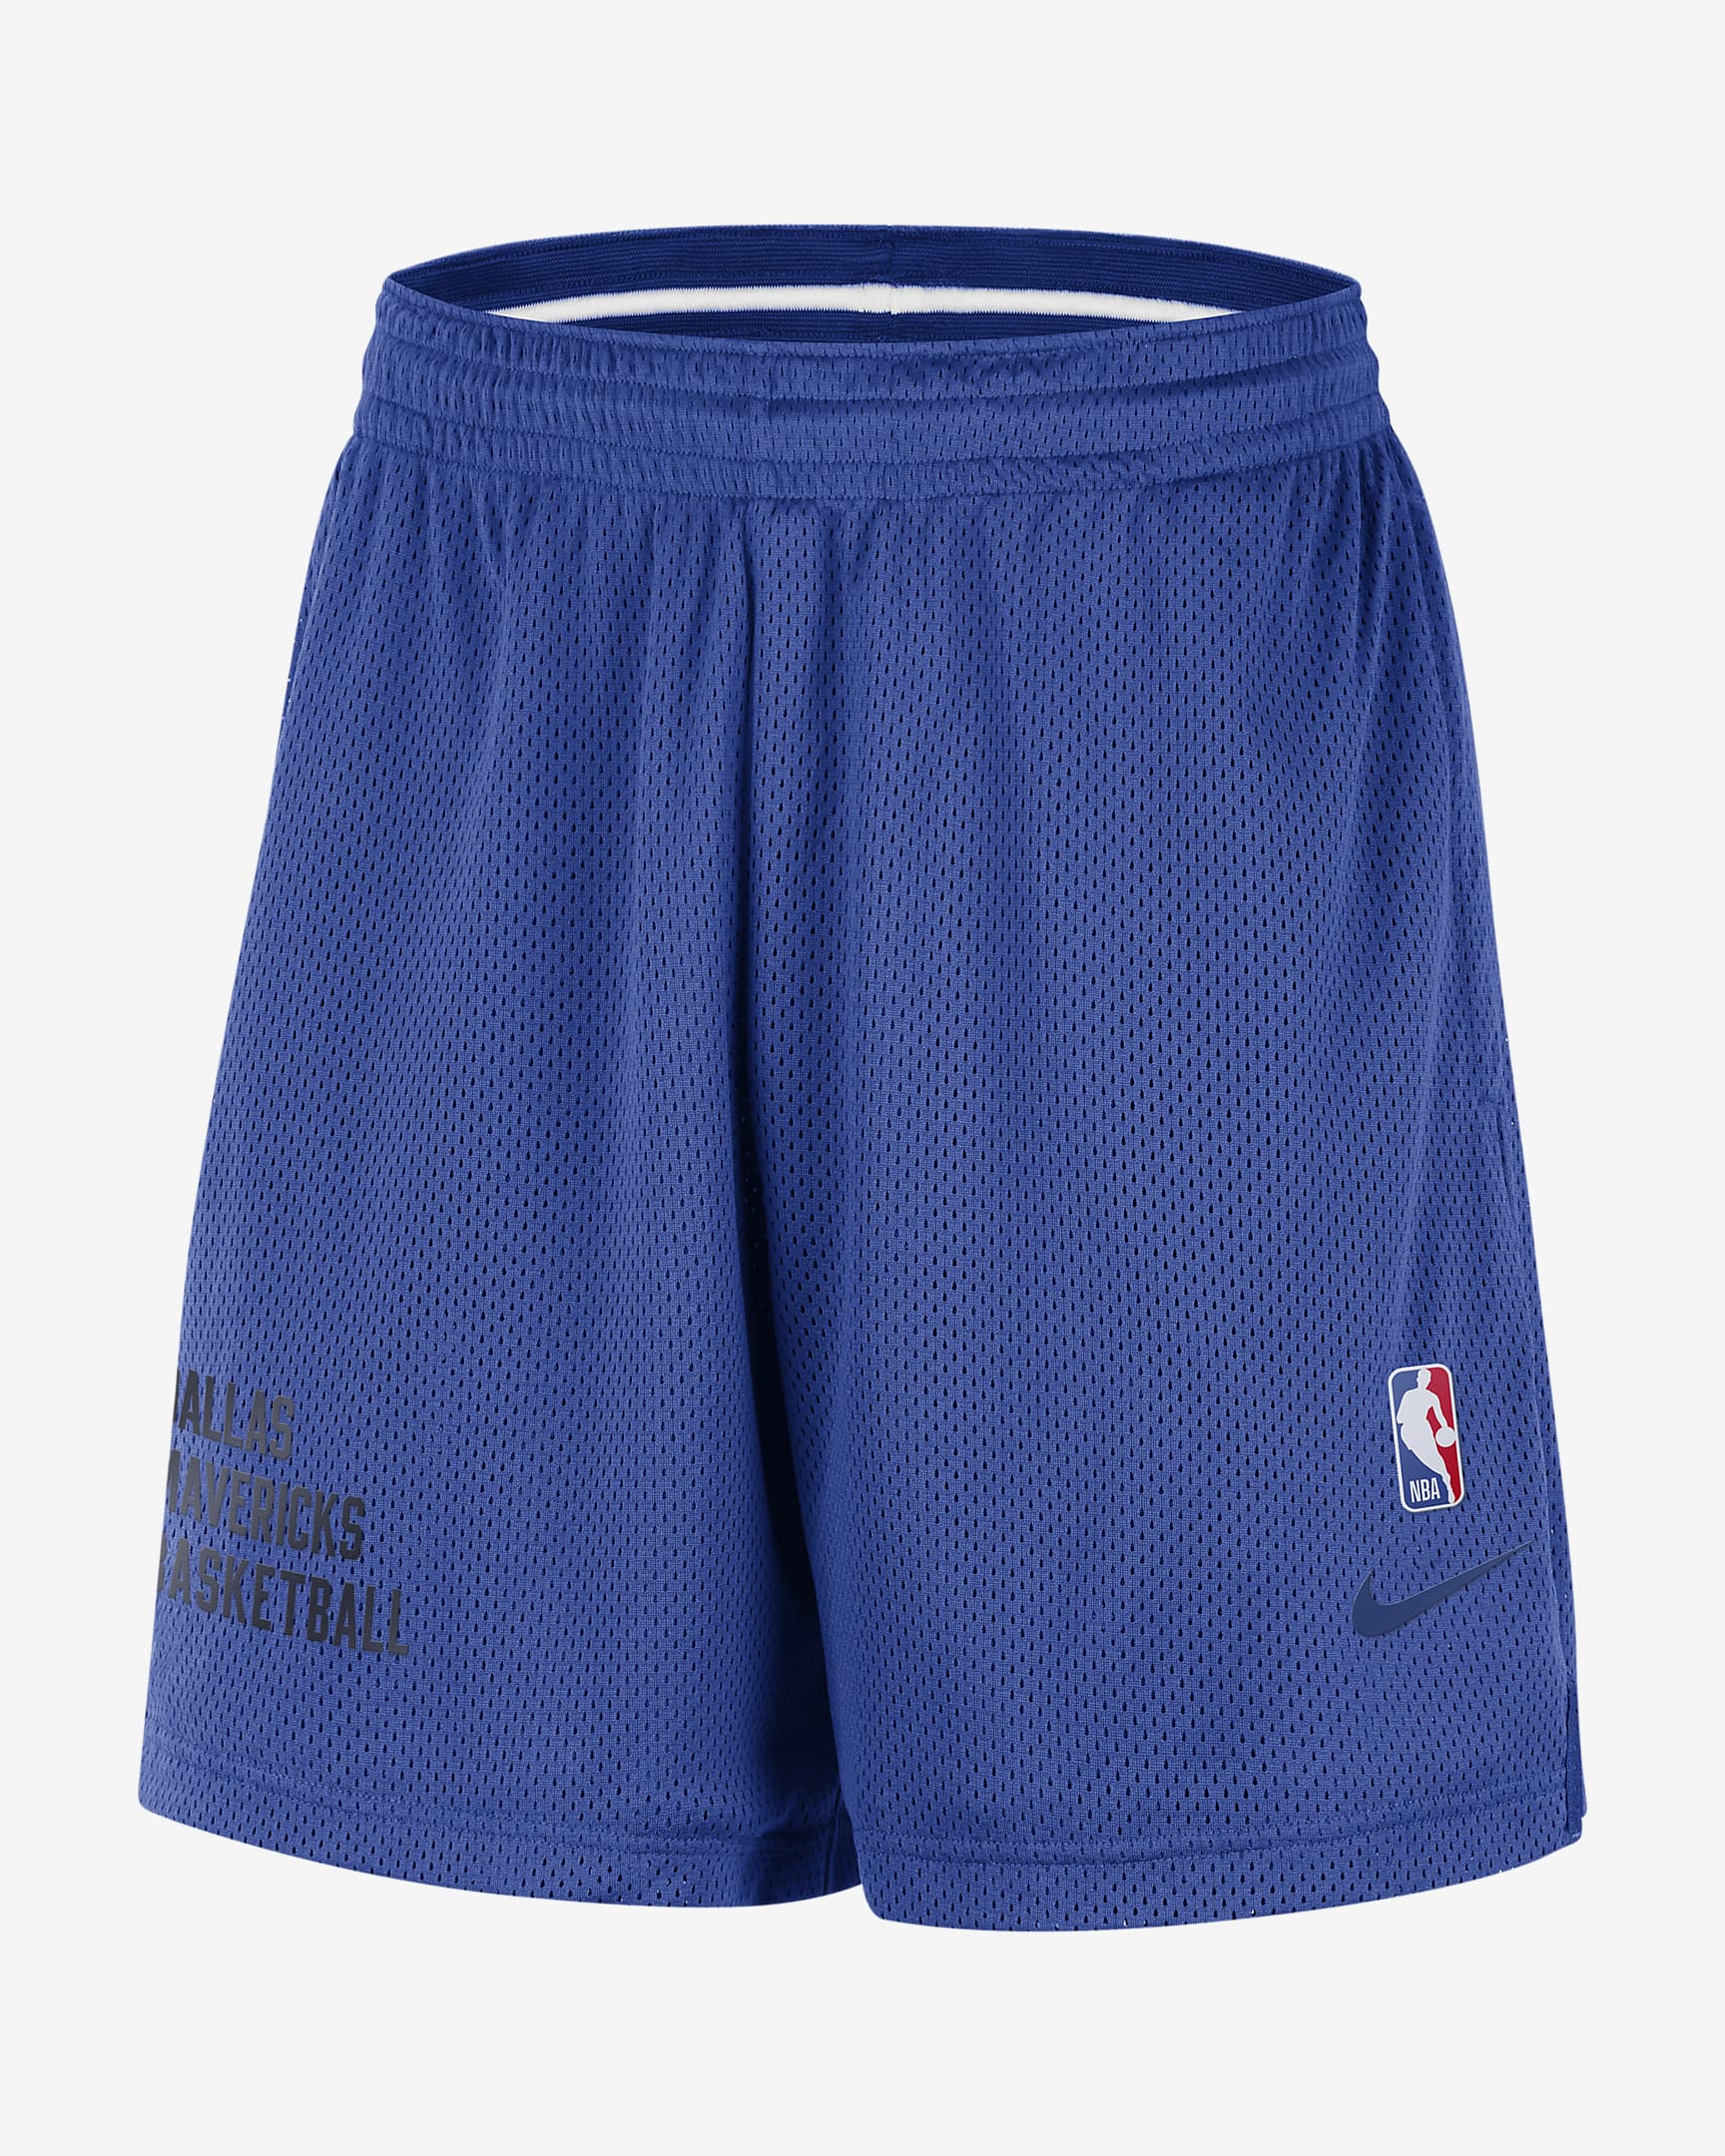 Dallas Mavericks Men's Nike NBA Mesh Shorts. Nike.com